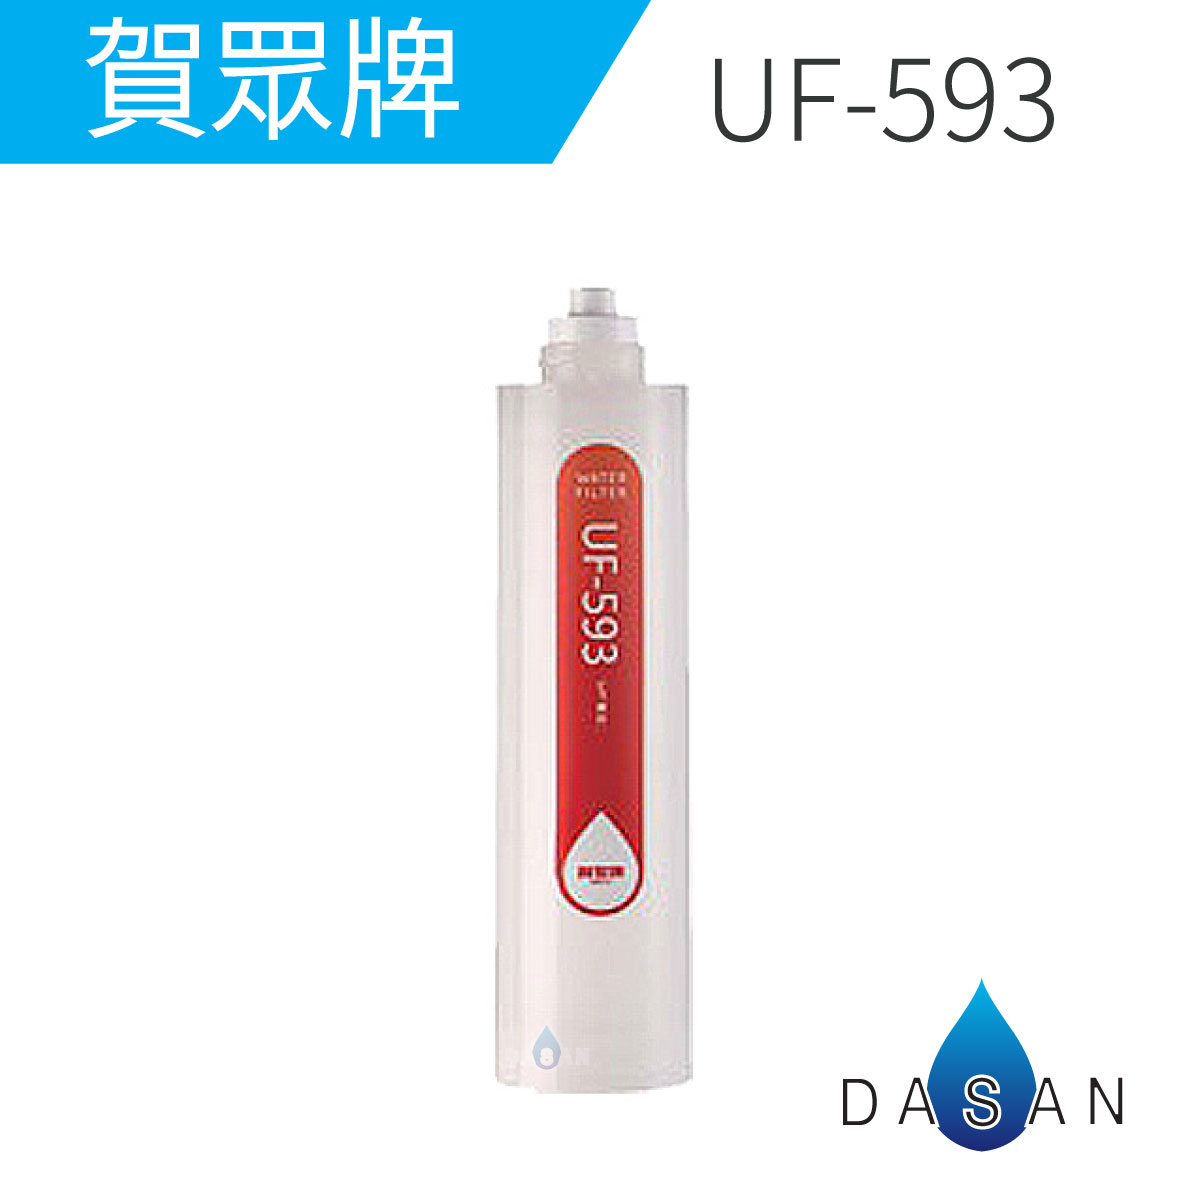 UF-593 UF593 賀眾牌濾心 卡式1微米PP纖維濾芯 適用UR-5802JW-1 UR-5401JW-1 亦可替代UF-591